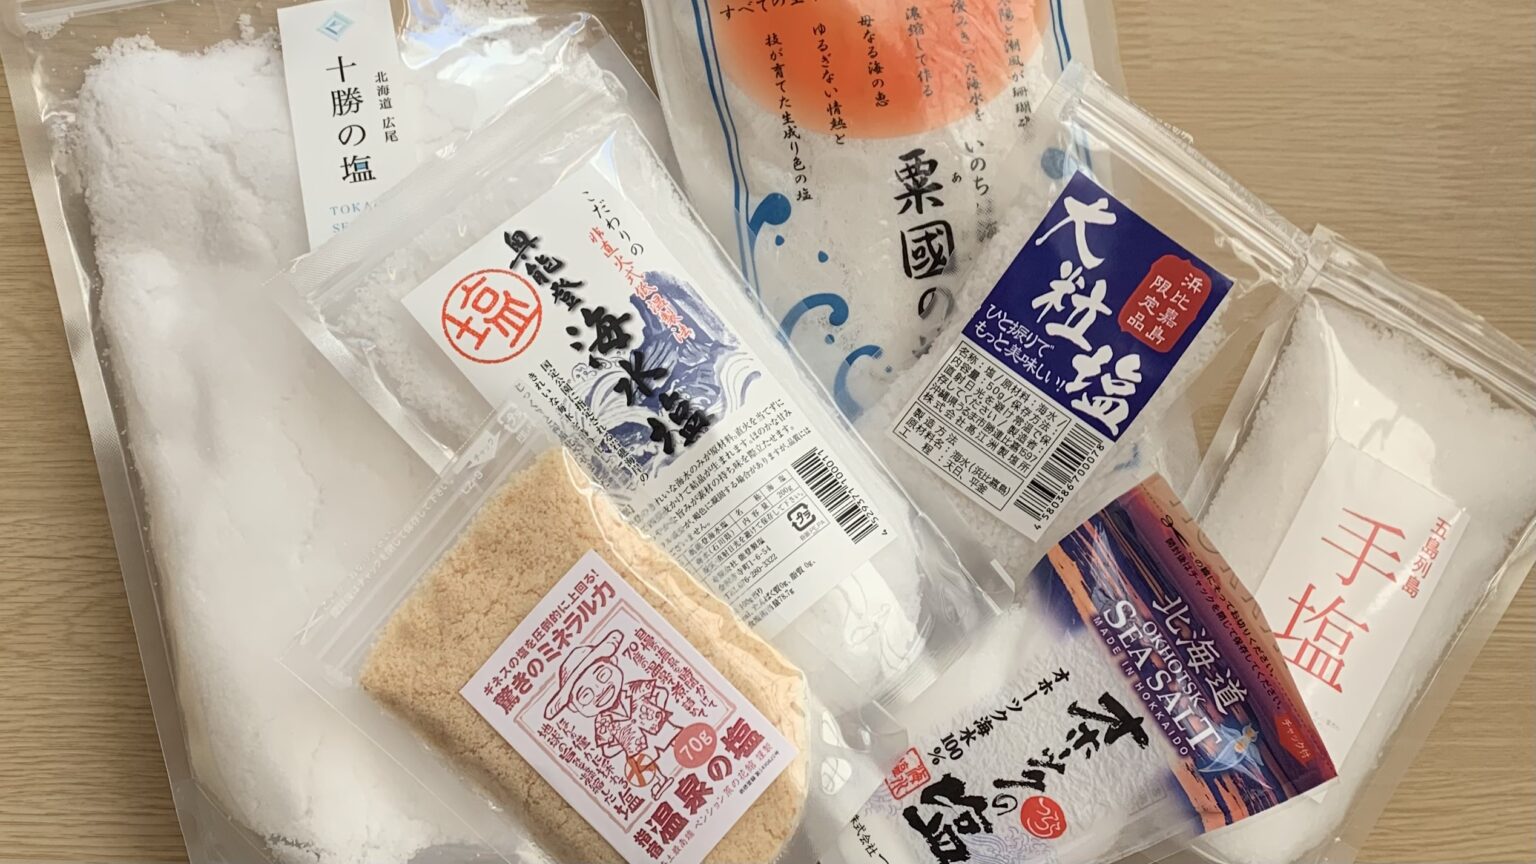 7kinds of salt in japan